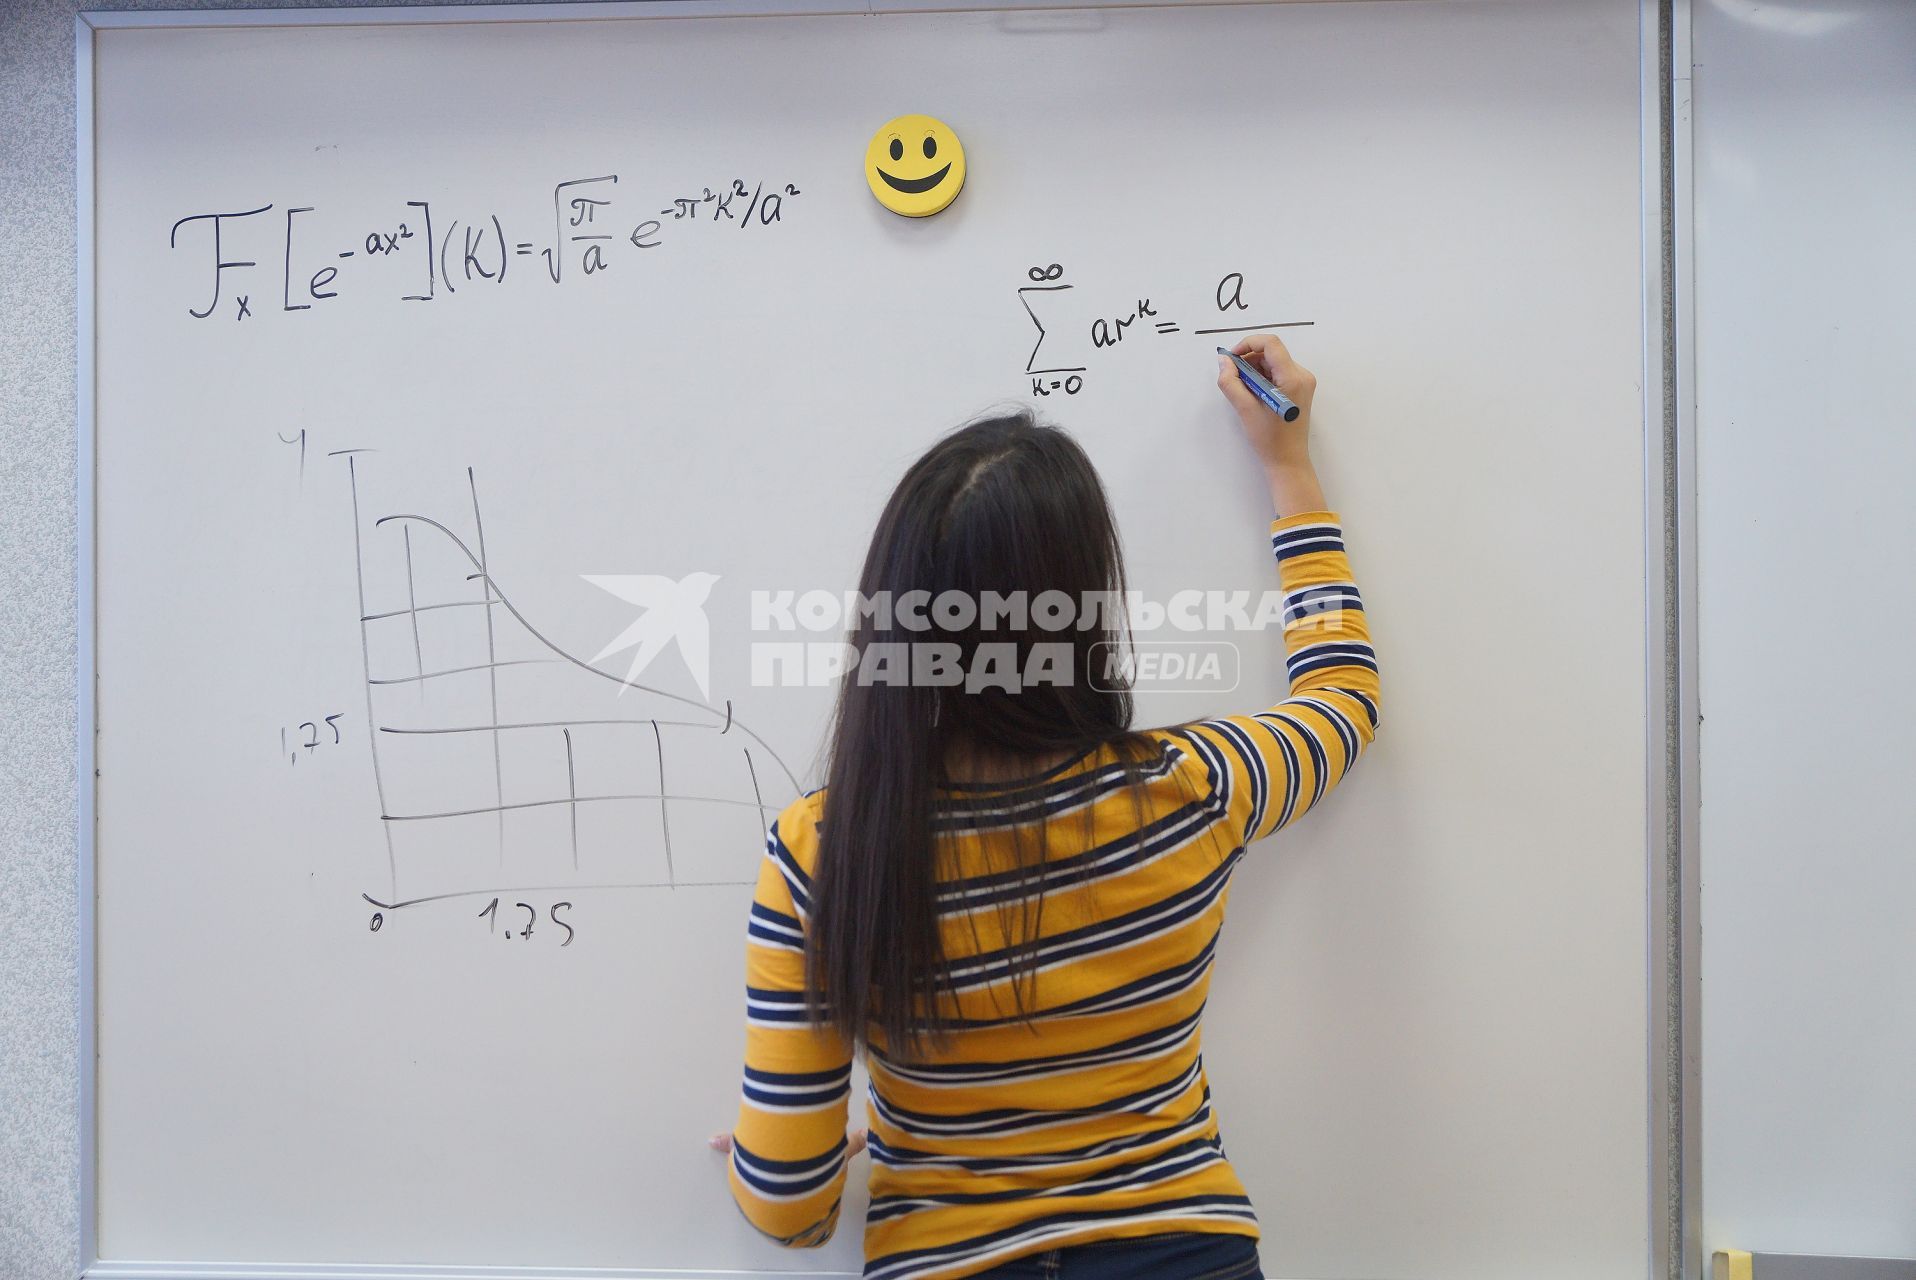 Екатеринбург. Студентка ВУЗа пишет формулу на доске.